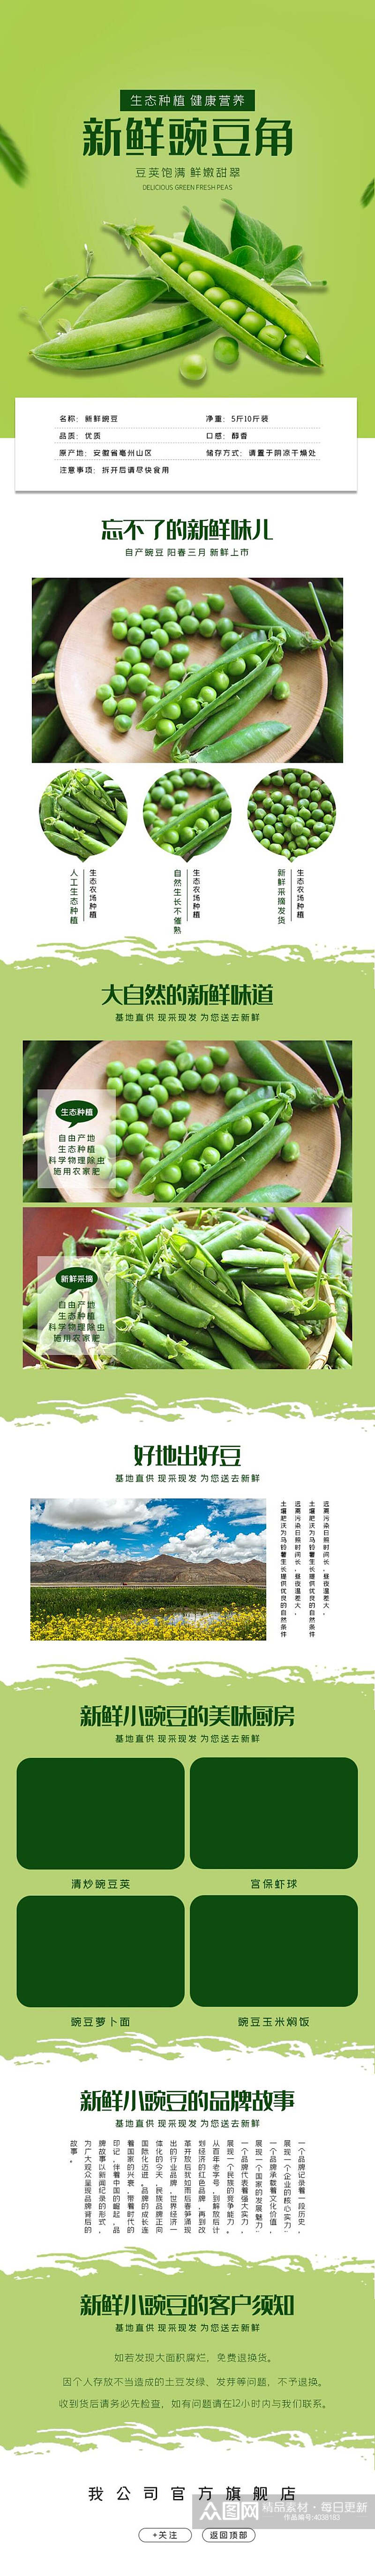 新鲜豌豆角蔬菜手机版详情页素材